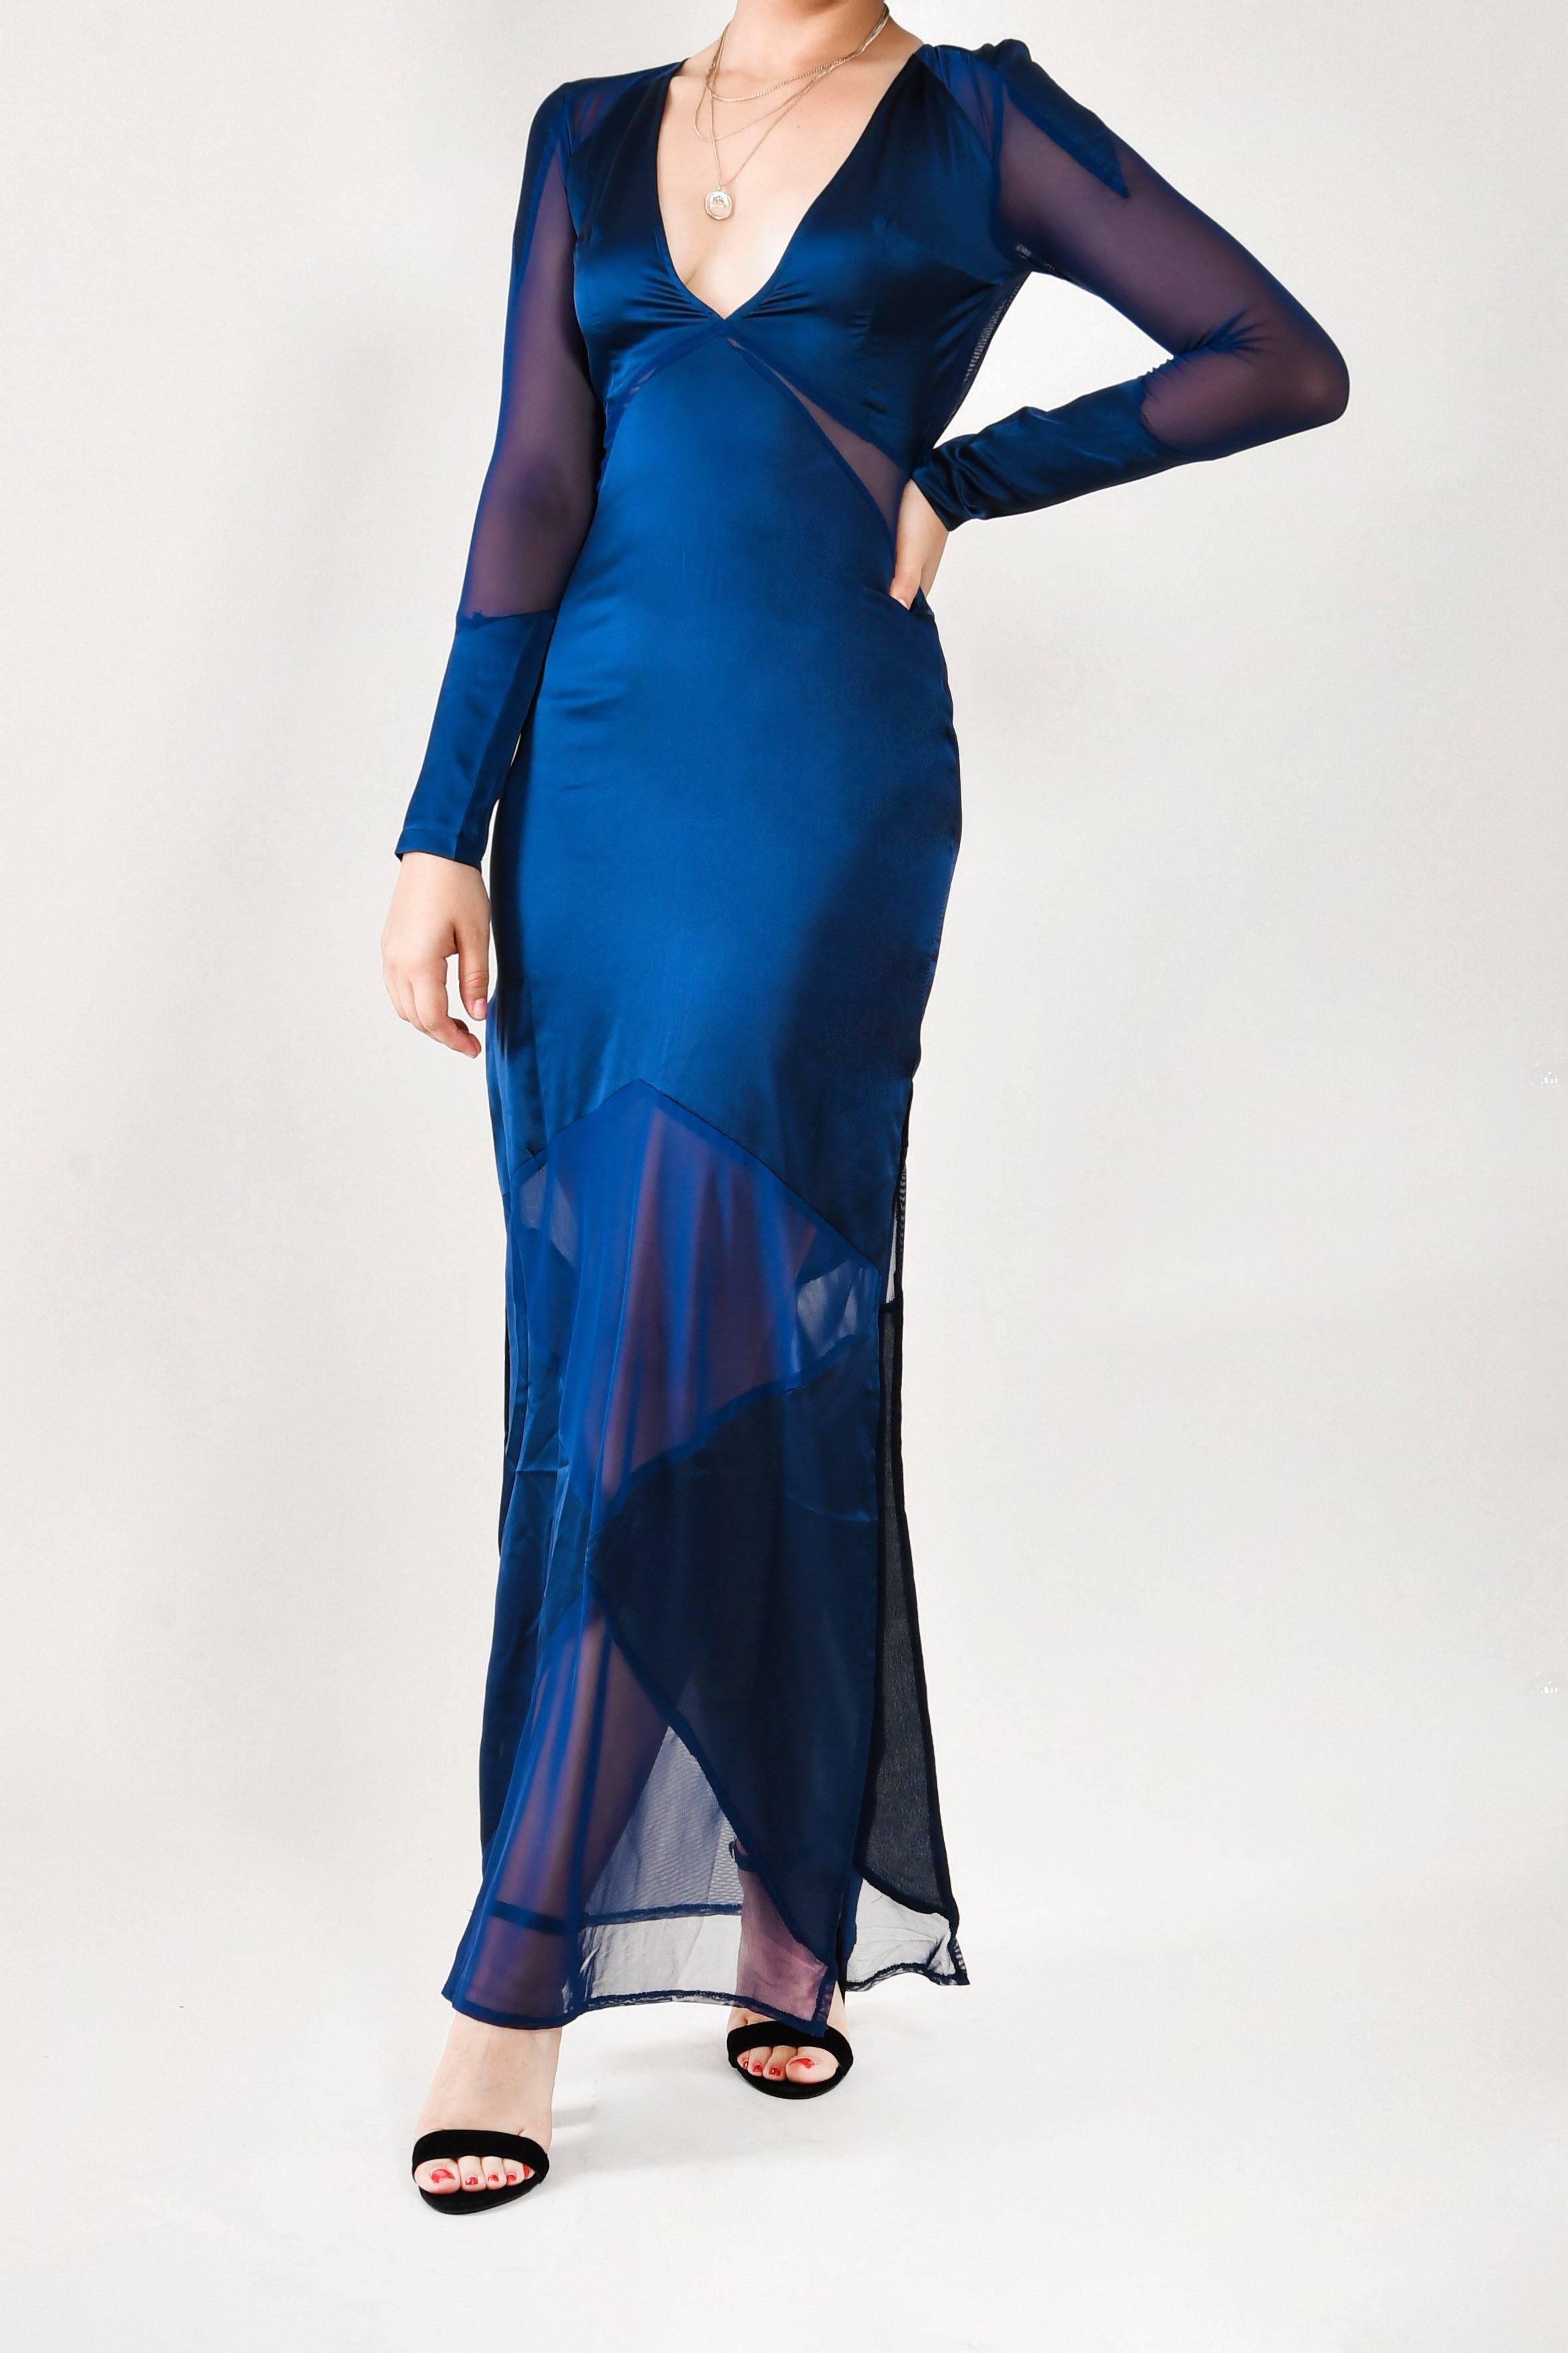 Roxana - vestido largo azul - lendthetrendmx renta de vestidos mexico